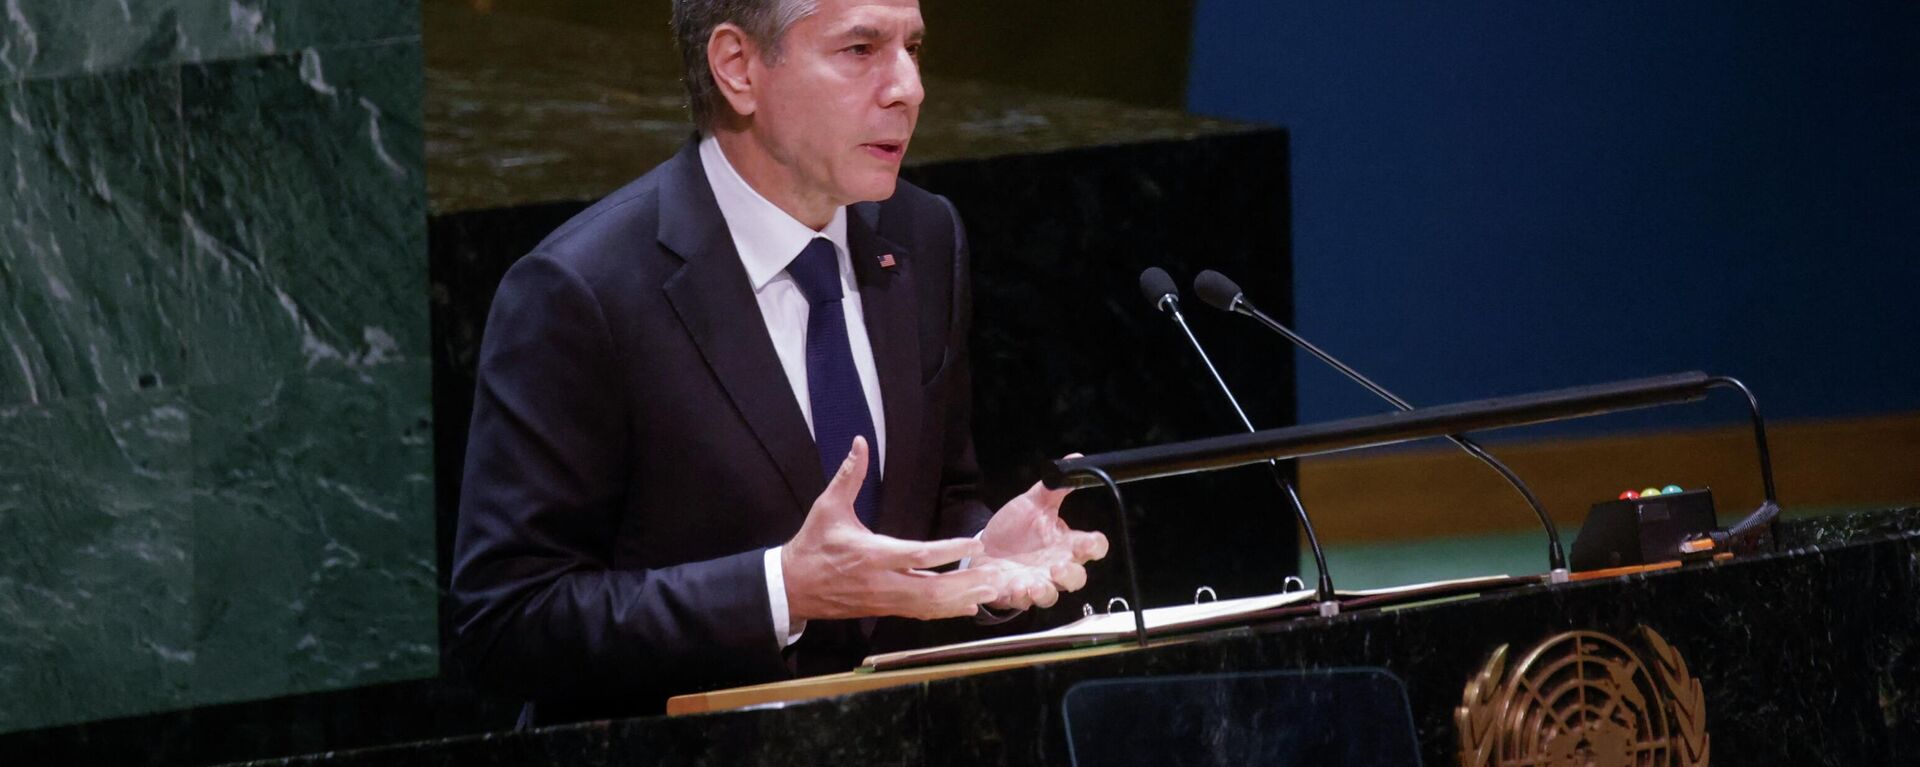 O secretário de Estado dos EUA, Antony Blinken, fala durante a Conferência de Revisão de 2022 das Partes do Tratado de Não Proliferação de Armas Nucleares nas Nações Unidas em Nova York, 1º de agosto de 2022 - Sputnik Brasil, 1920, 01.08.2022